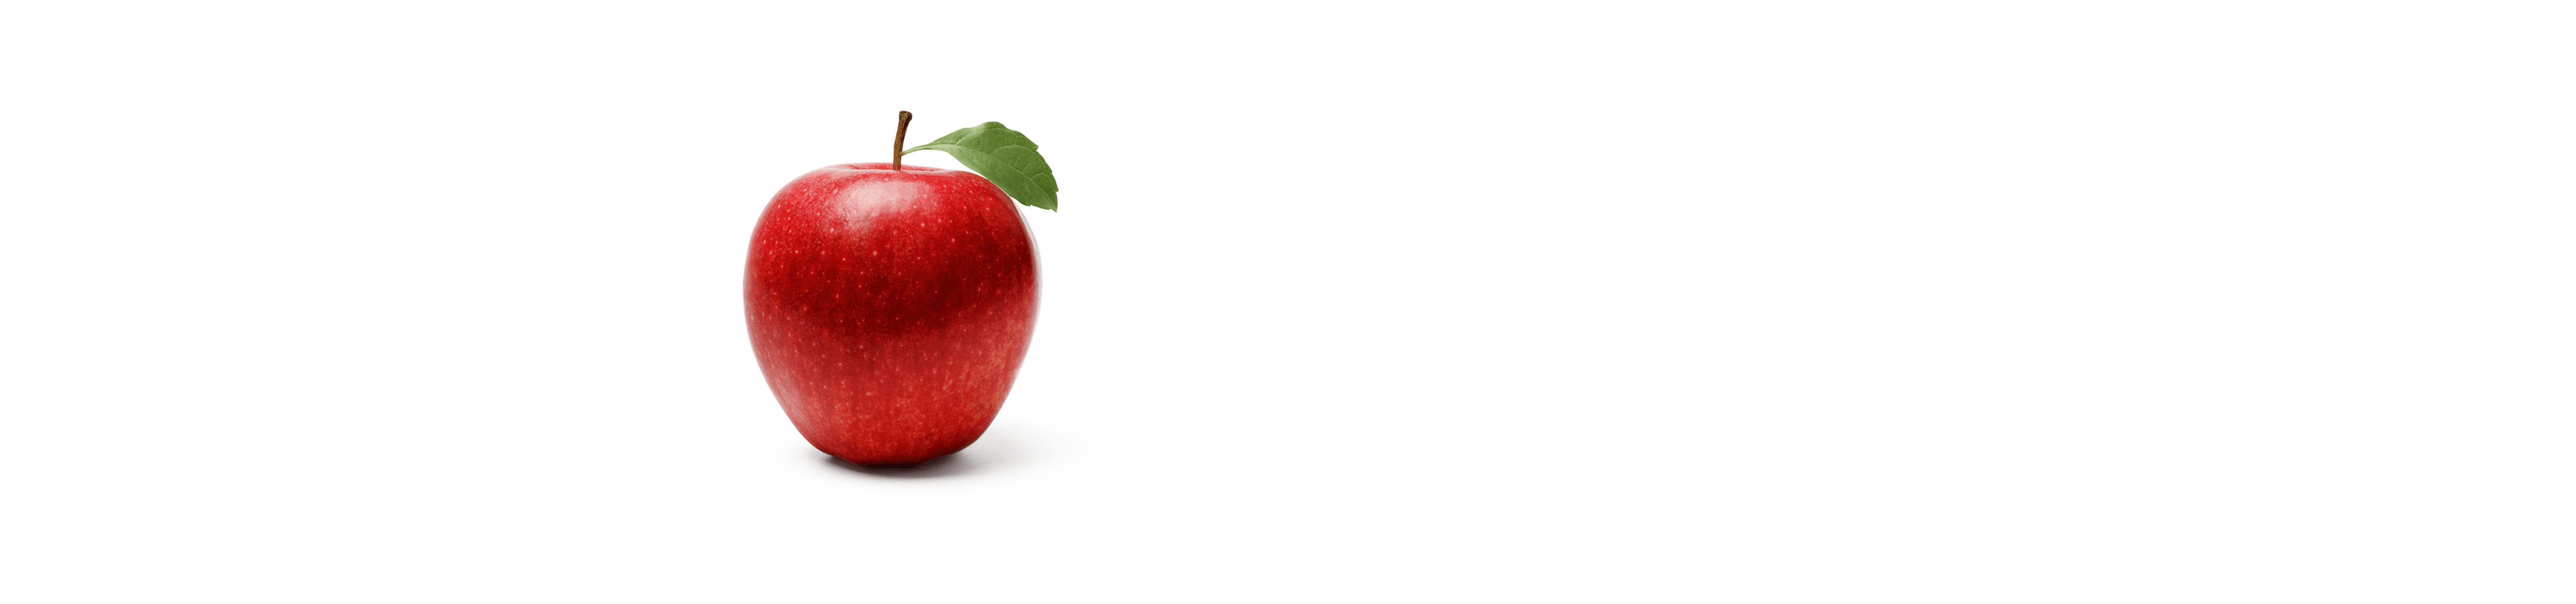 Roter aufgeschnittener Apfel